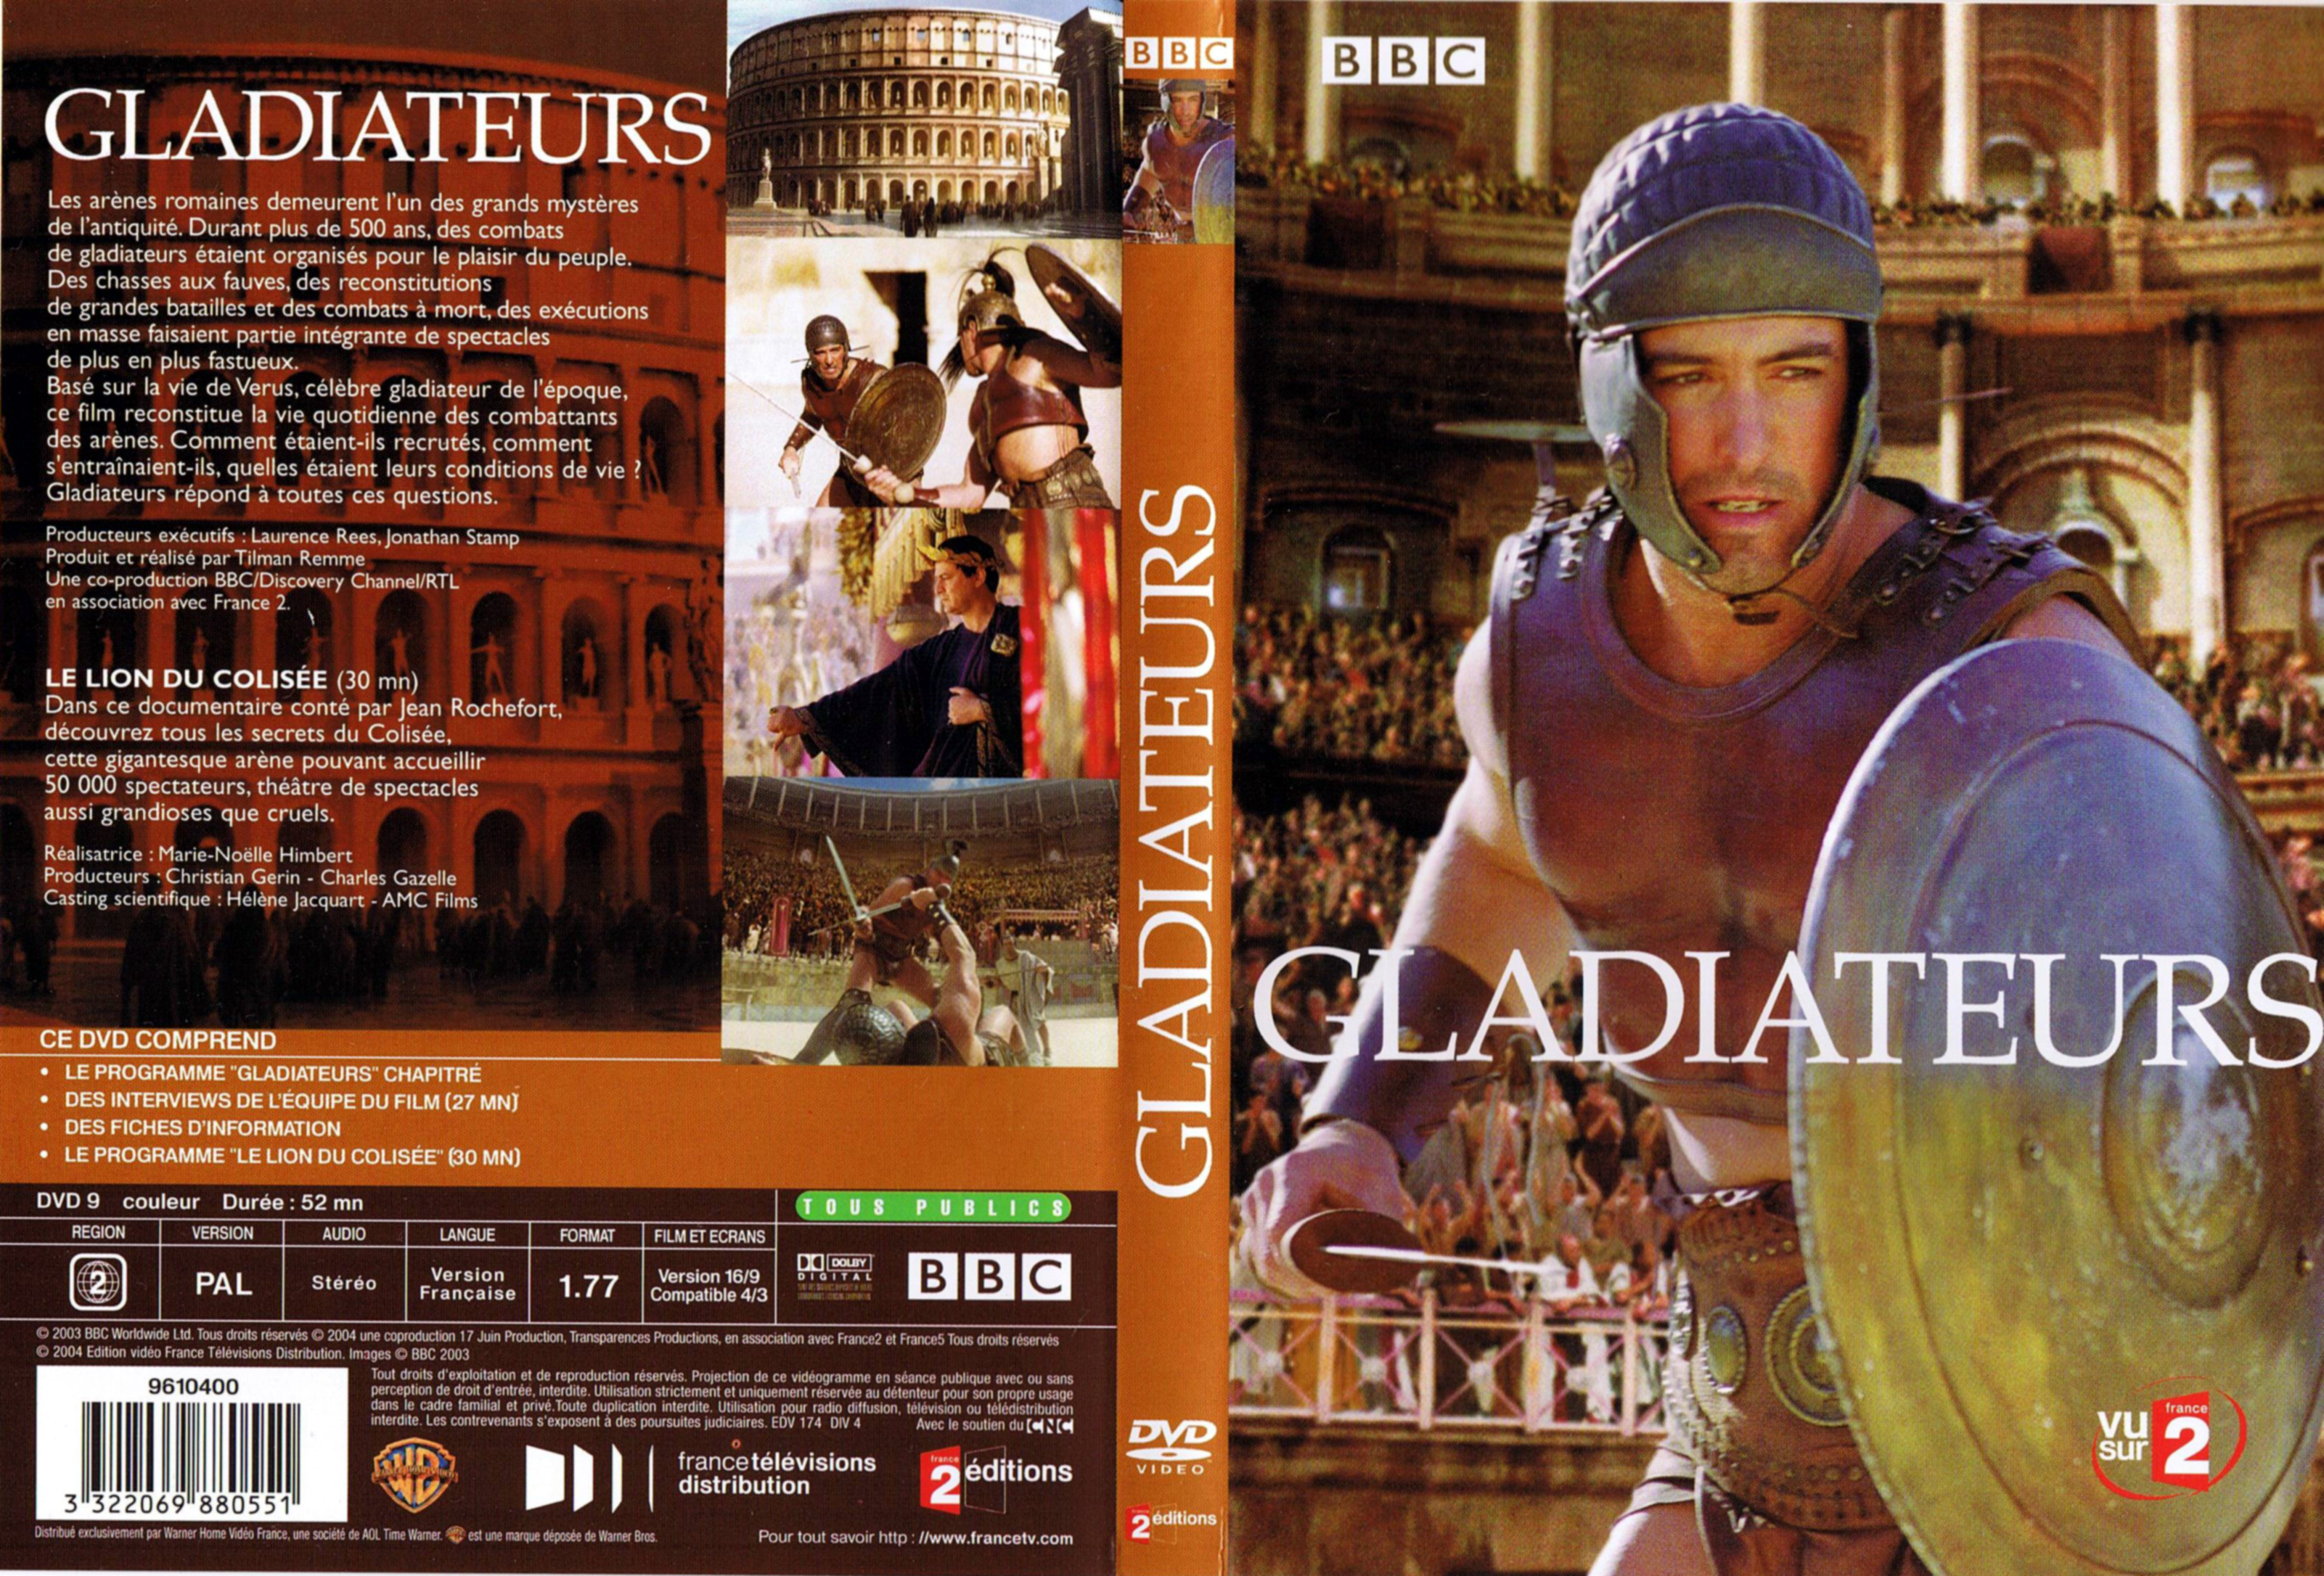 Jaquette DVD Gladiateurs